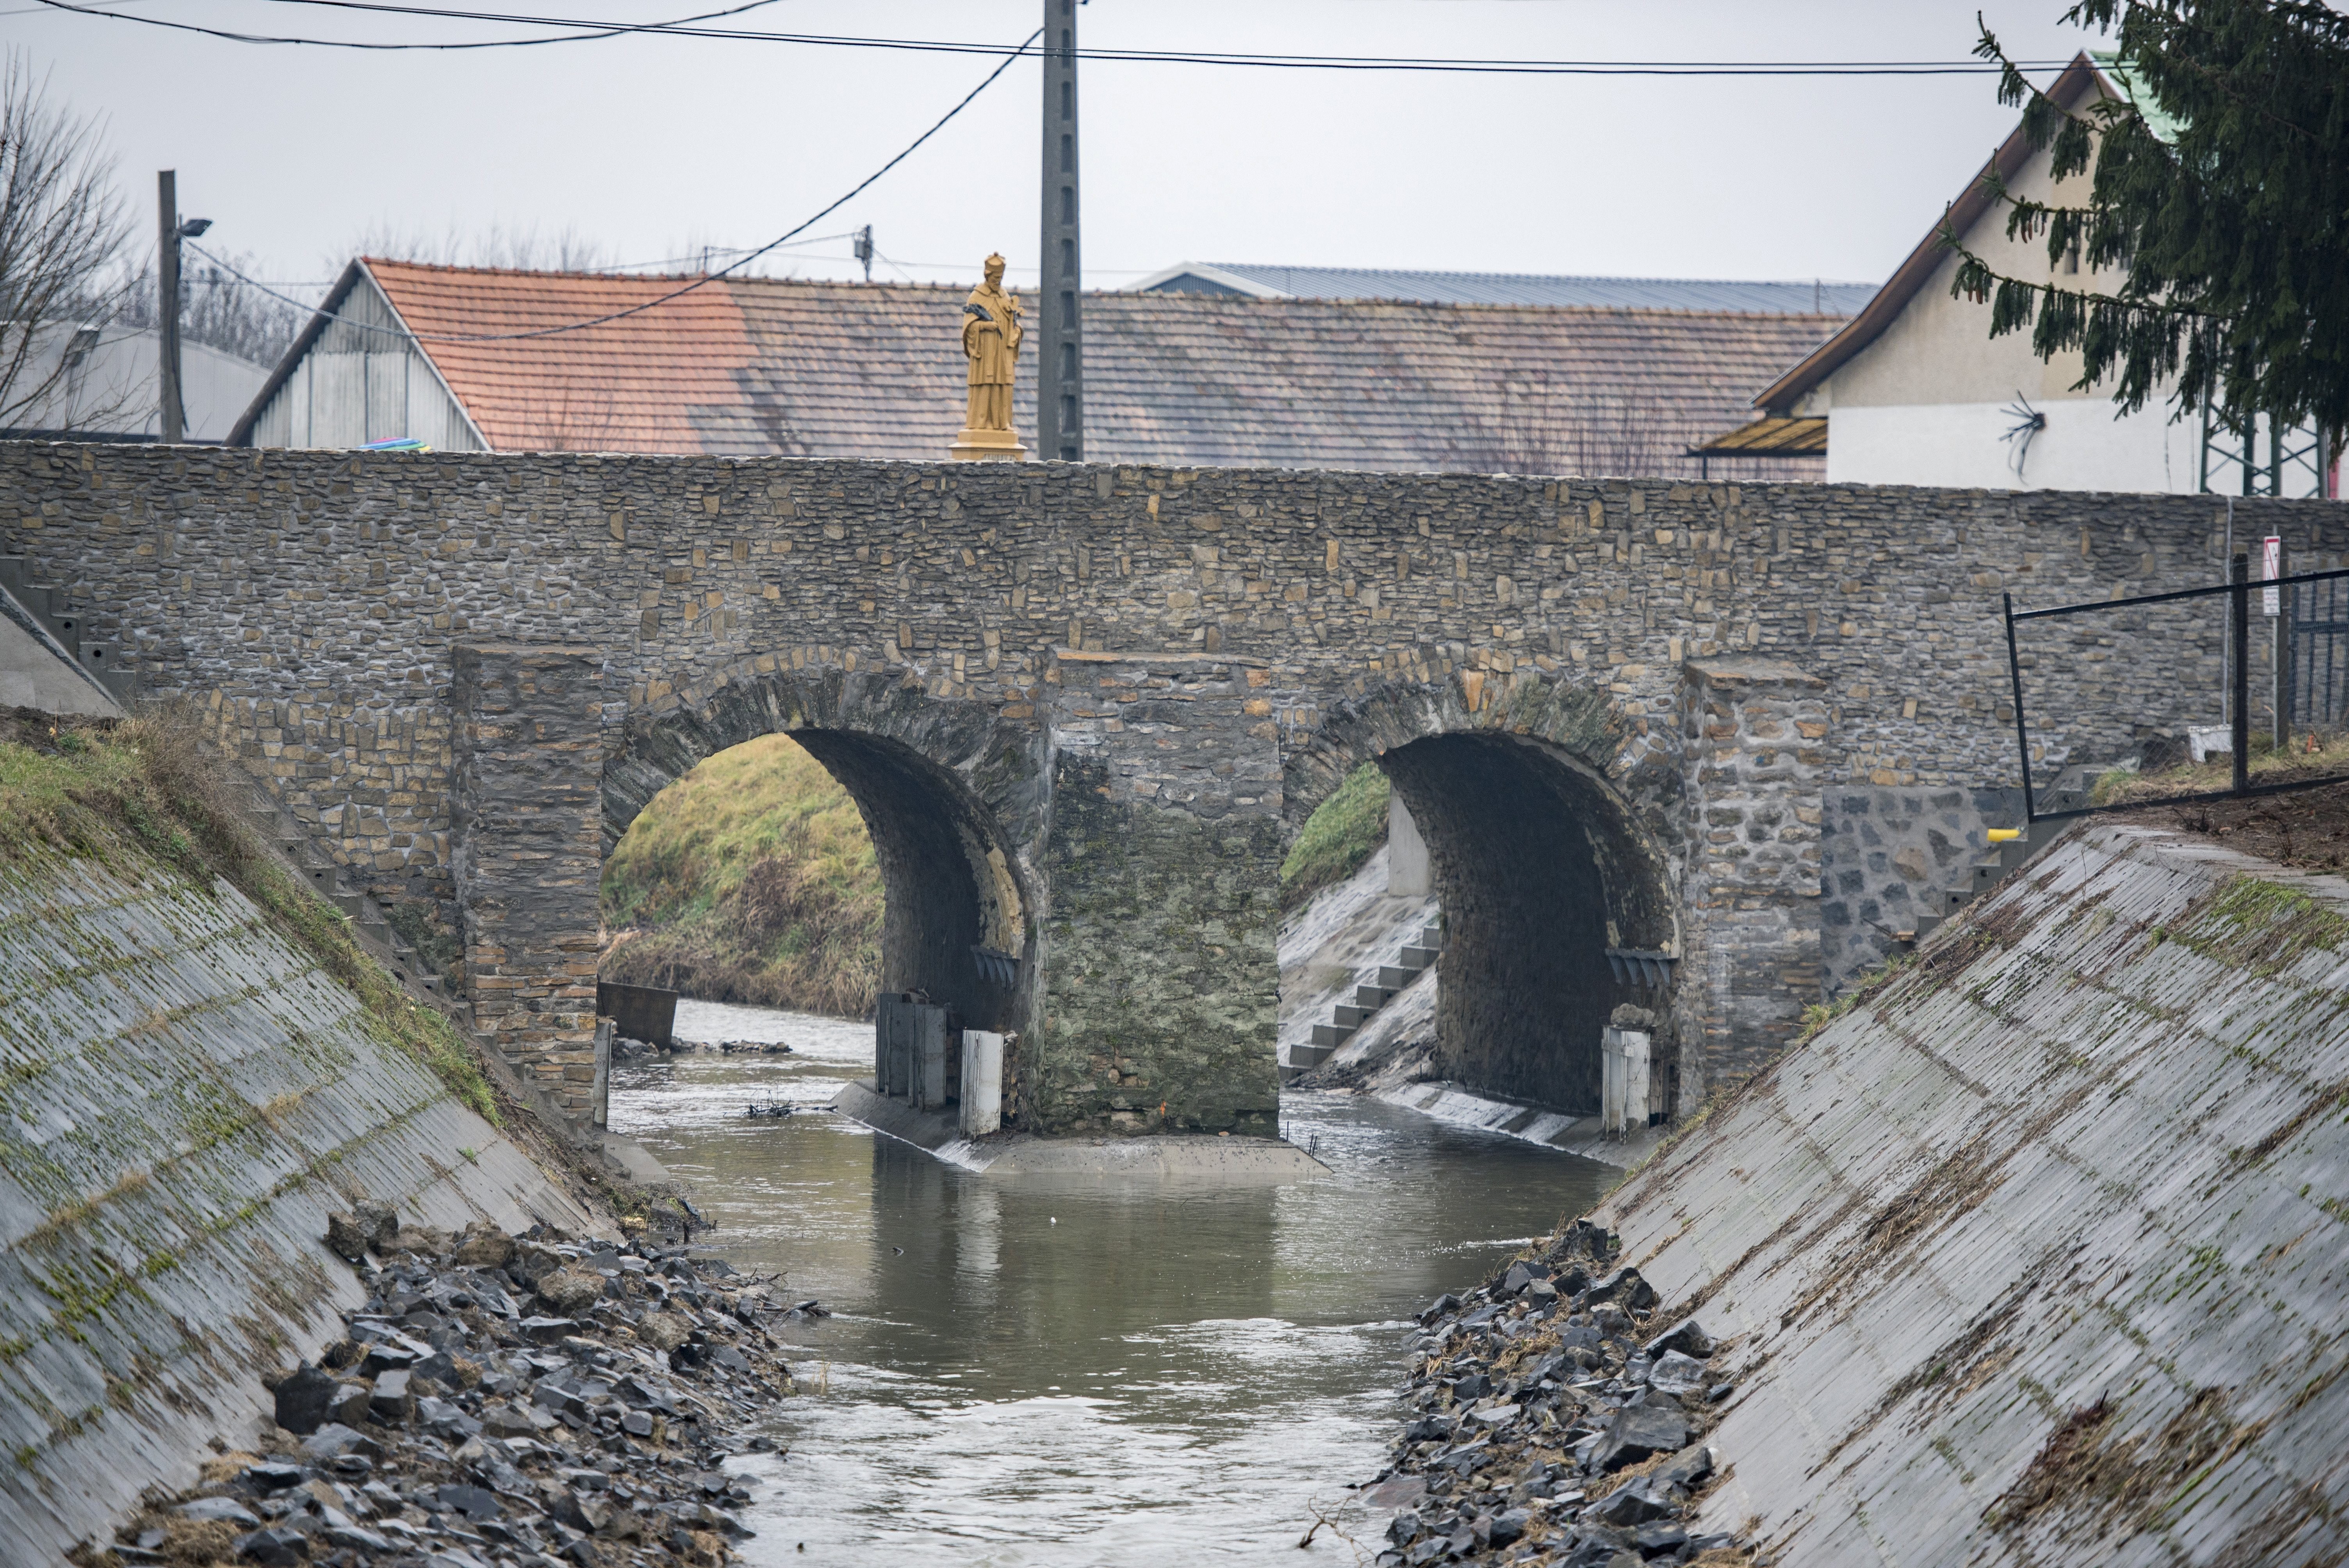 Nepomuki Szent János hídja a restaurálást követően (fotó: Magyar Építők)